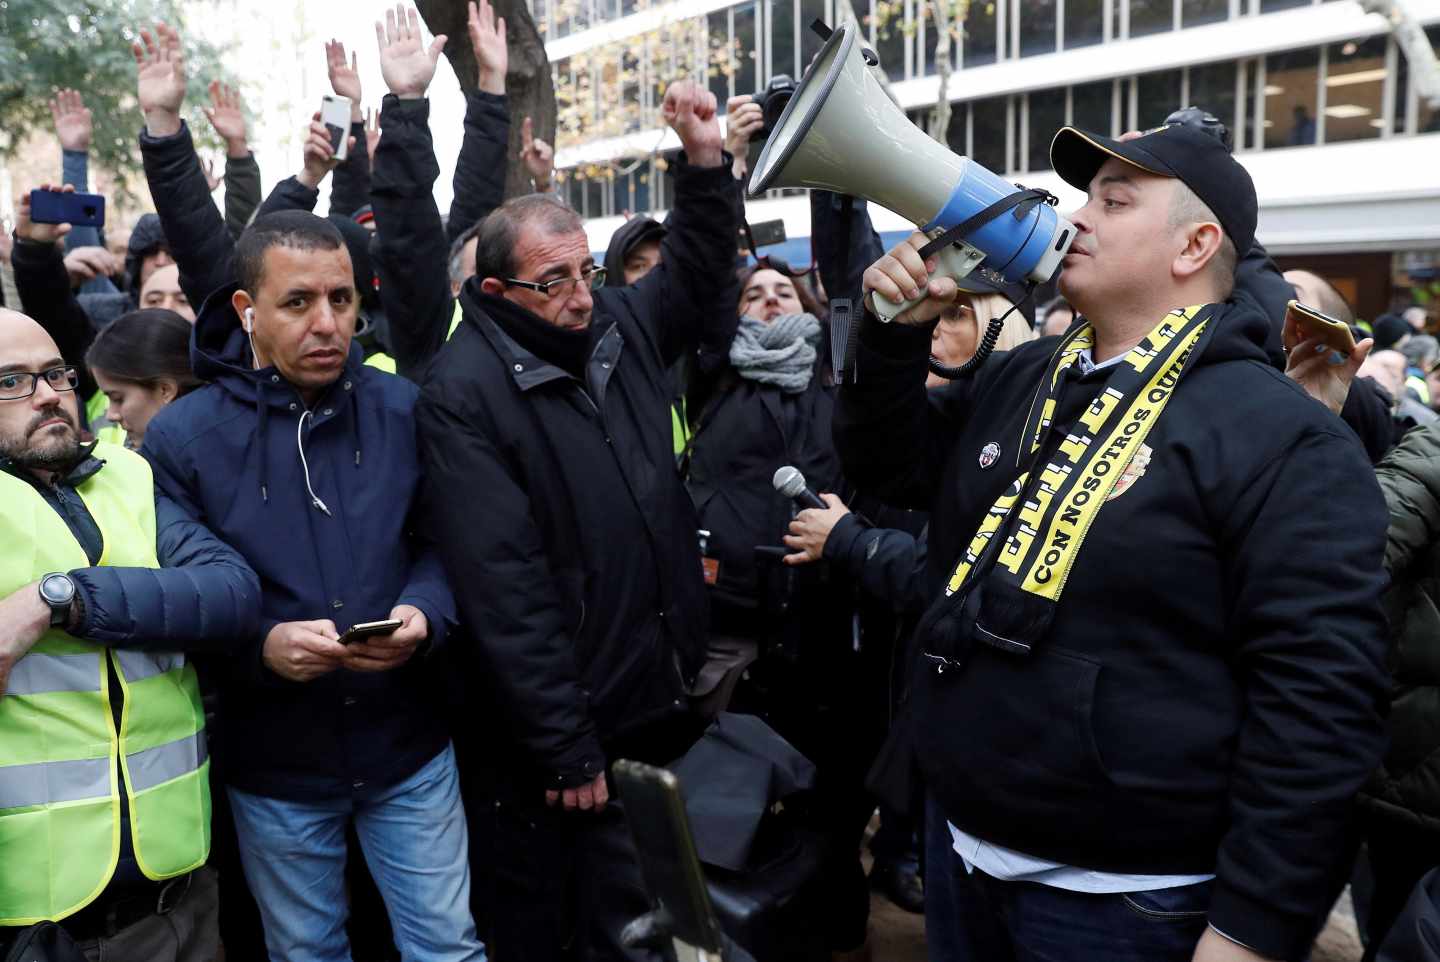 Ruptura en el taxi: el líder en Barcelona dimite por la presión de los más radicales